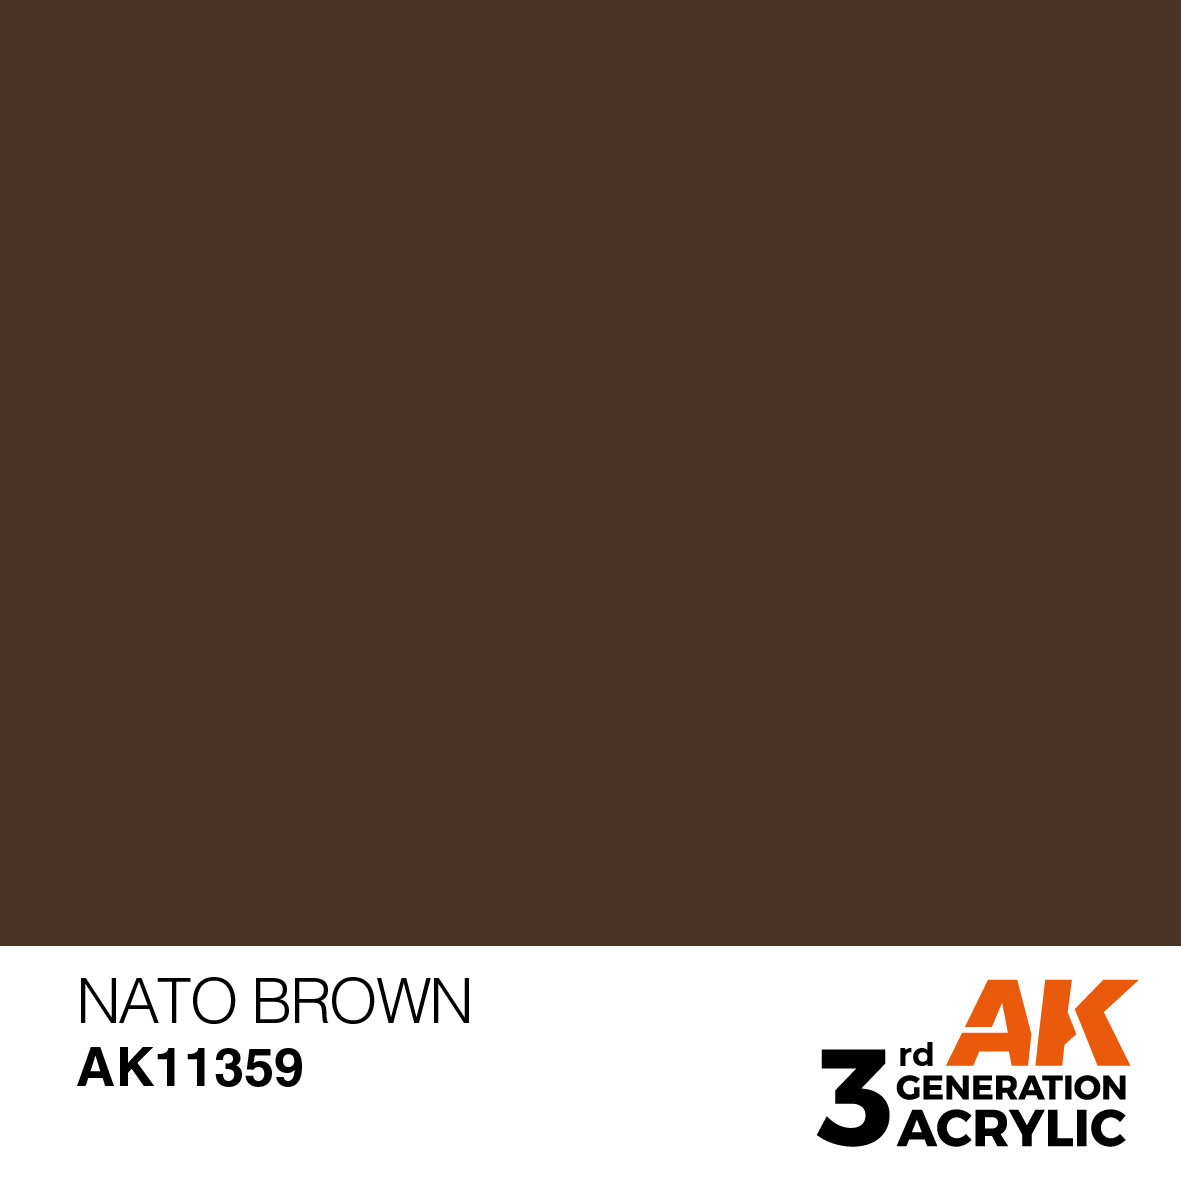 NATO BROWN – AFV